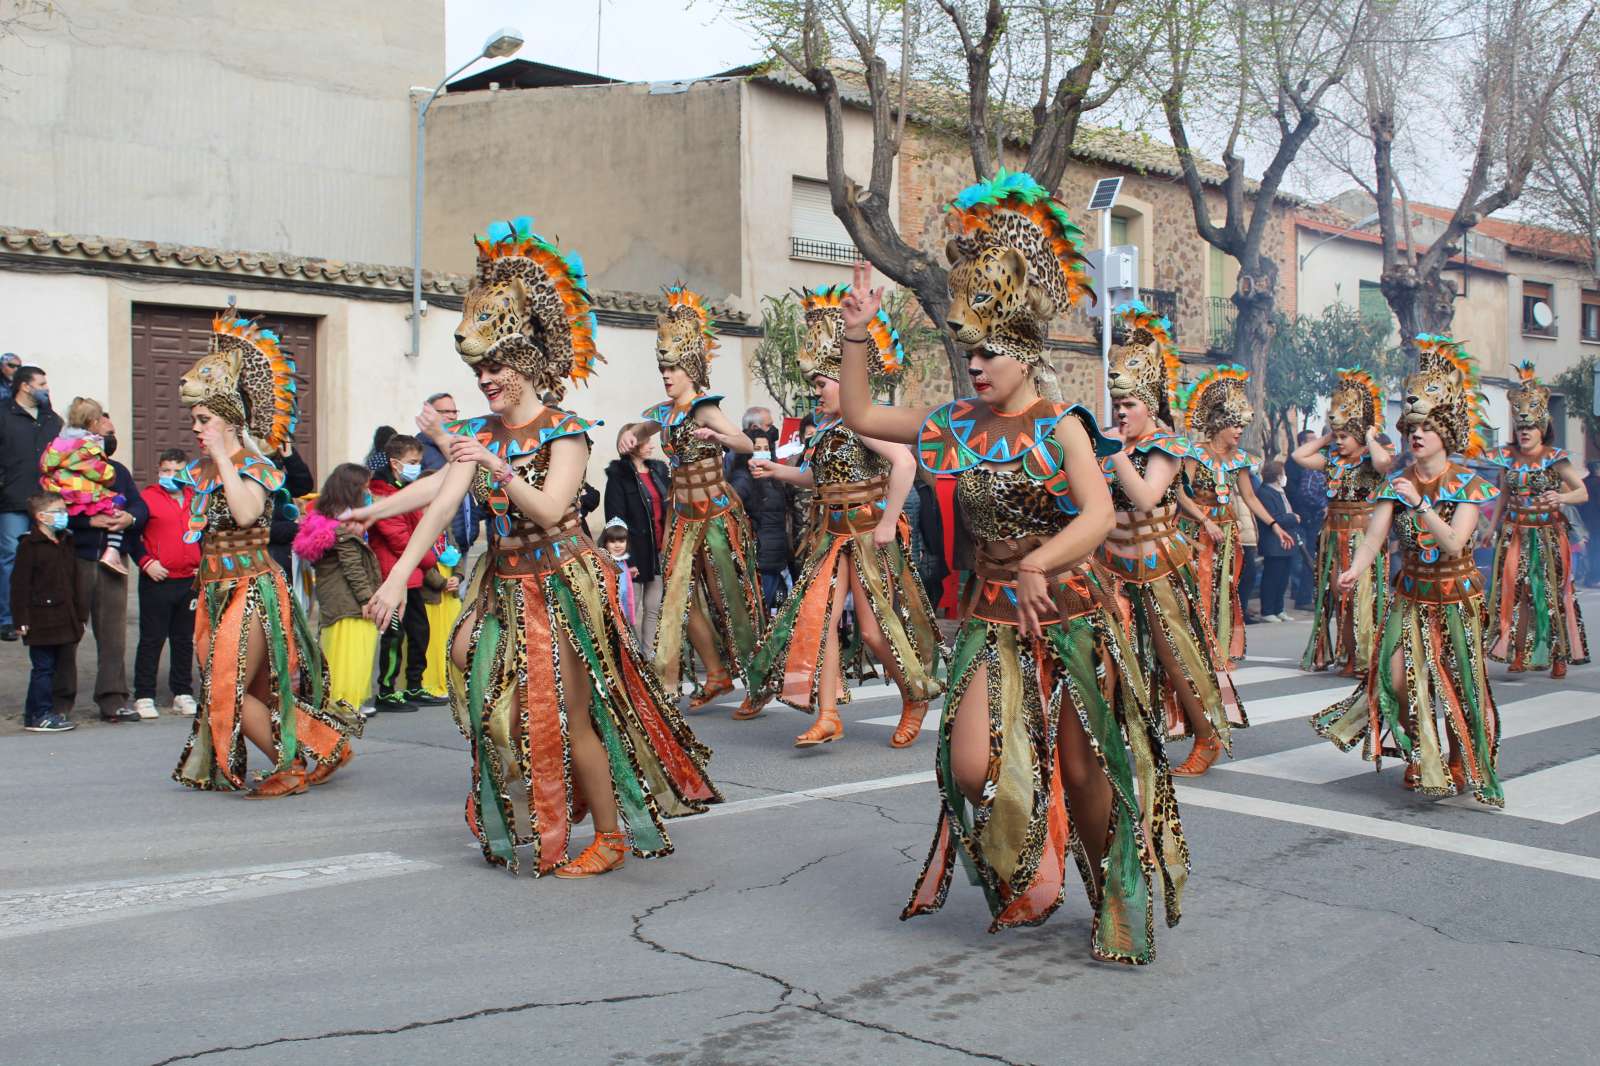 Harúspices se hace con un segundo puesto en el carnaval de Villarrubia de los Ojos